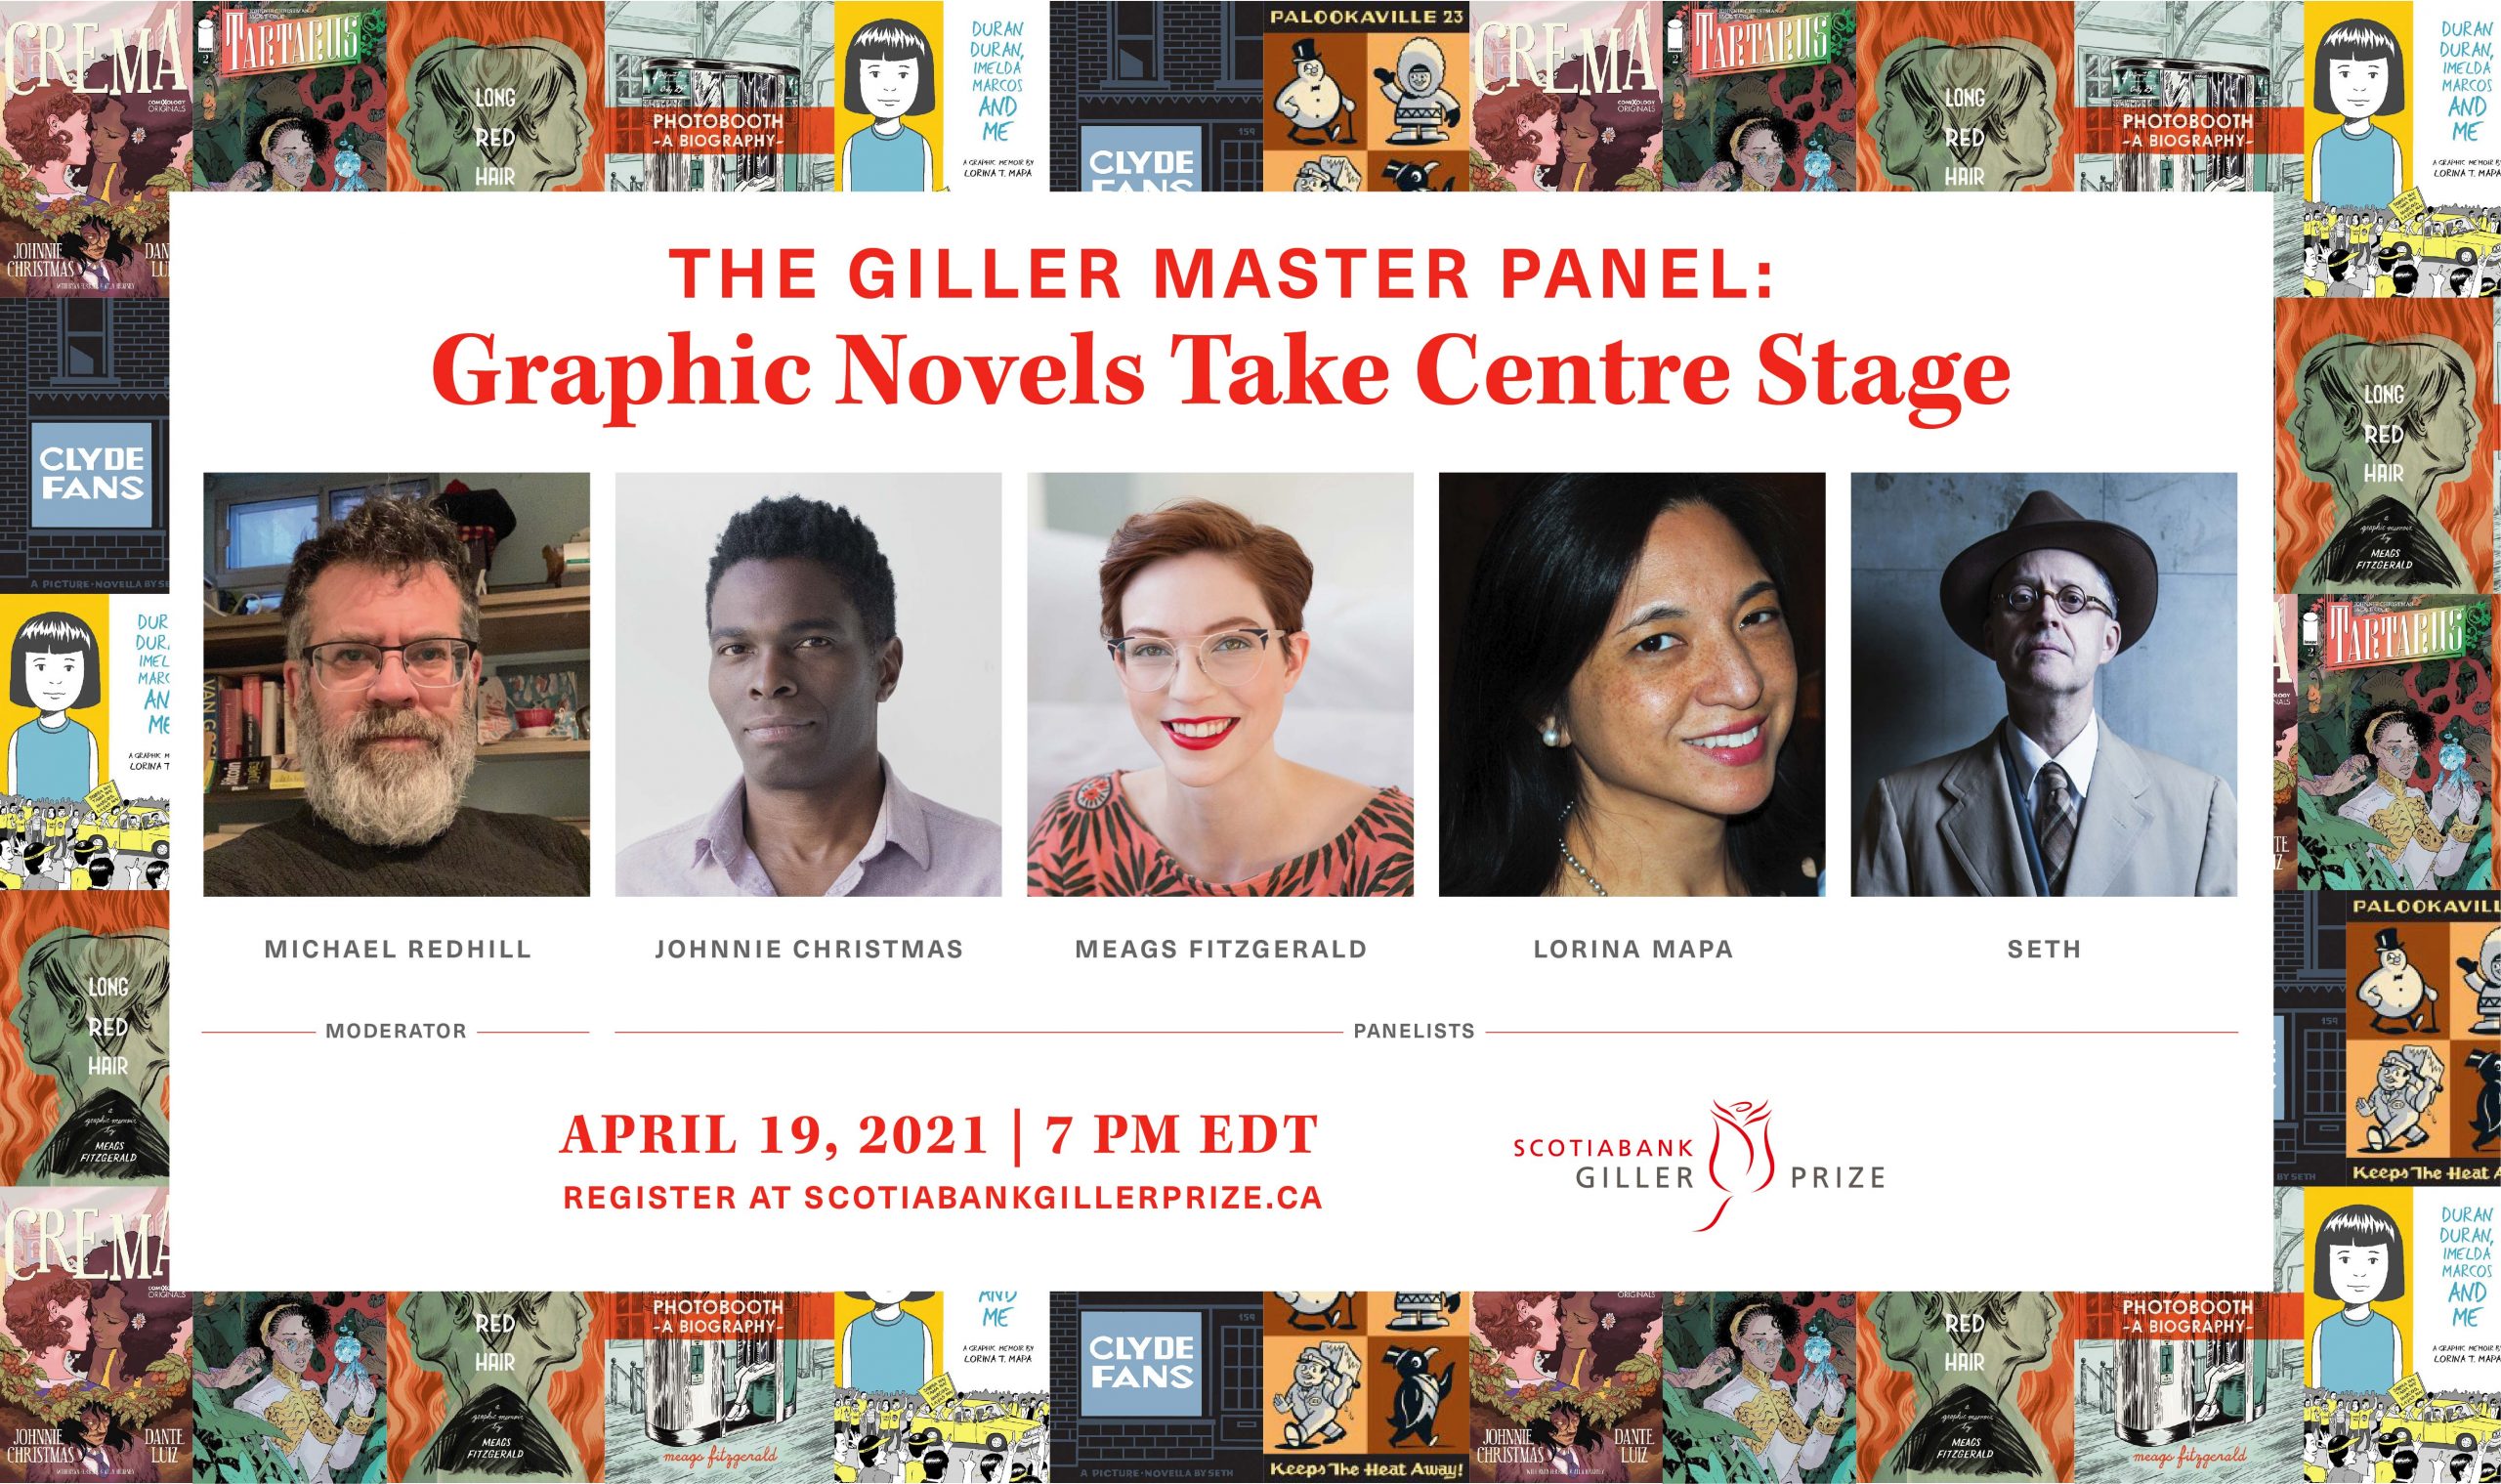 Giller Maser Panel: Graphic Novels Take Centre Stage